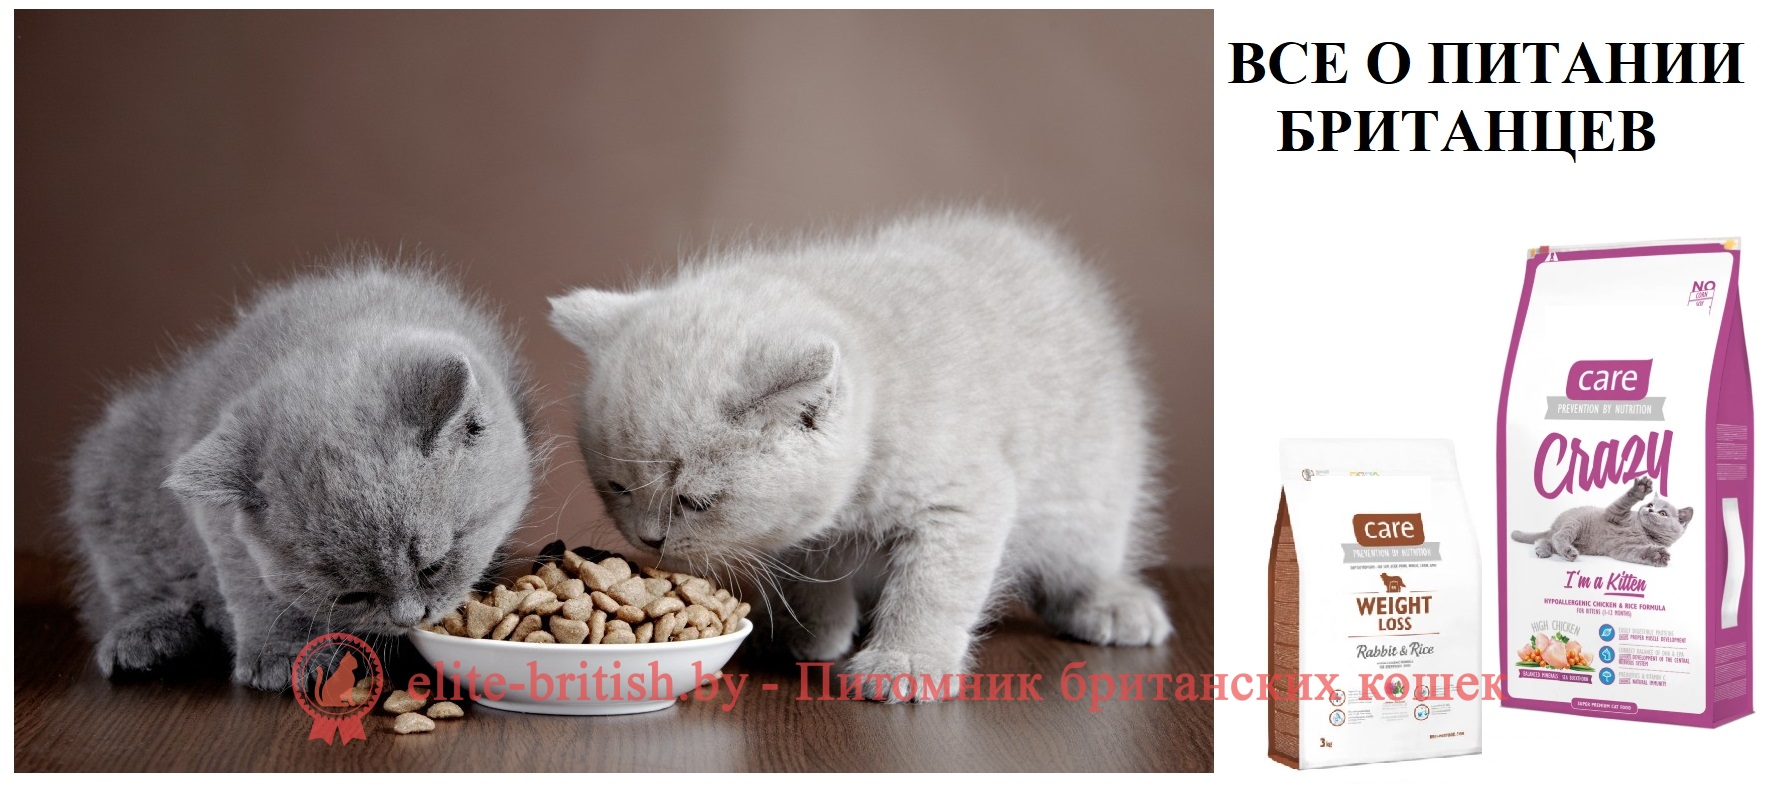 КАК И ЧЕМ КОРМИТЬ БРИТАНСКОГО КОТЕНКА, КОШКУ, КОТА: ВСЕ О ПИТАНИИ  БРИТАНЦЕВ. Британские котята, коты, кошки: уход, кормление, питание. Когда  начинать прикорм котят британцев. Как правильно кормить британца. Как и чем  кормить